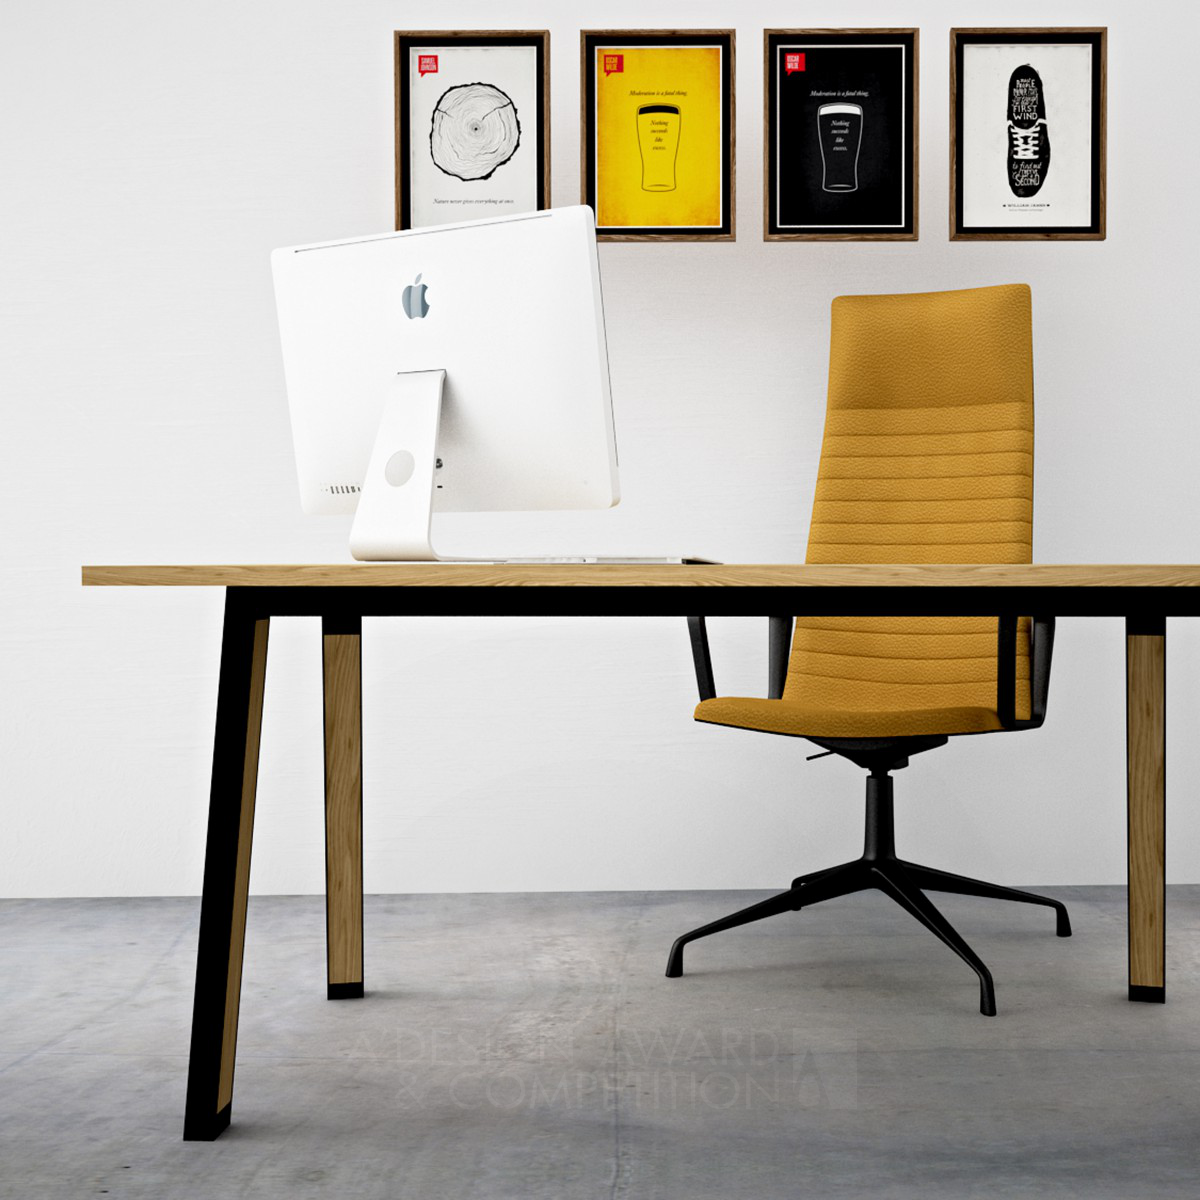 The SMART office desk by Petr Novague